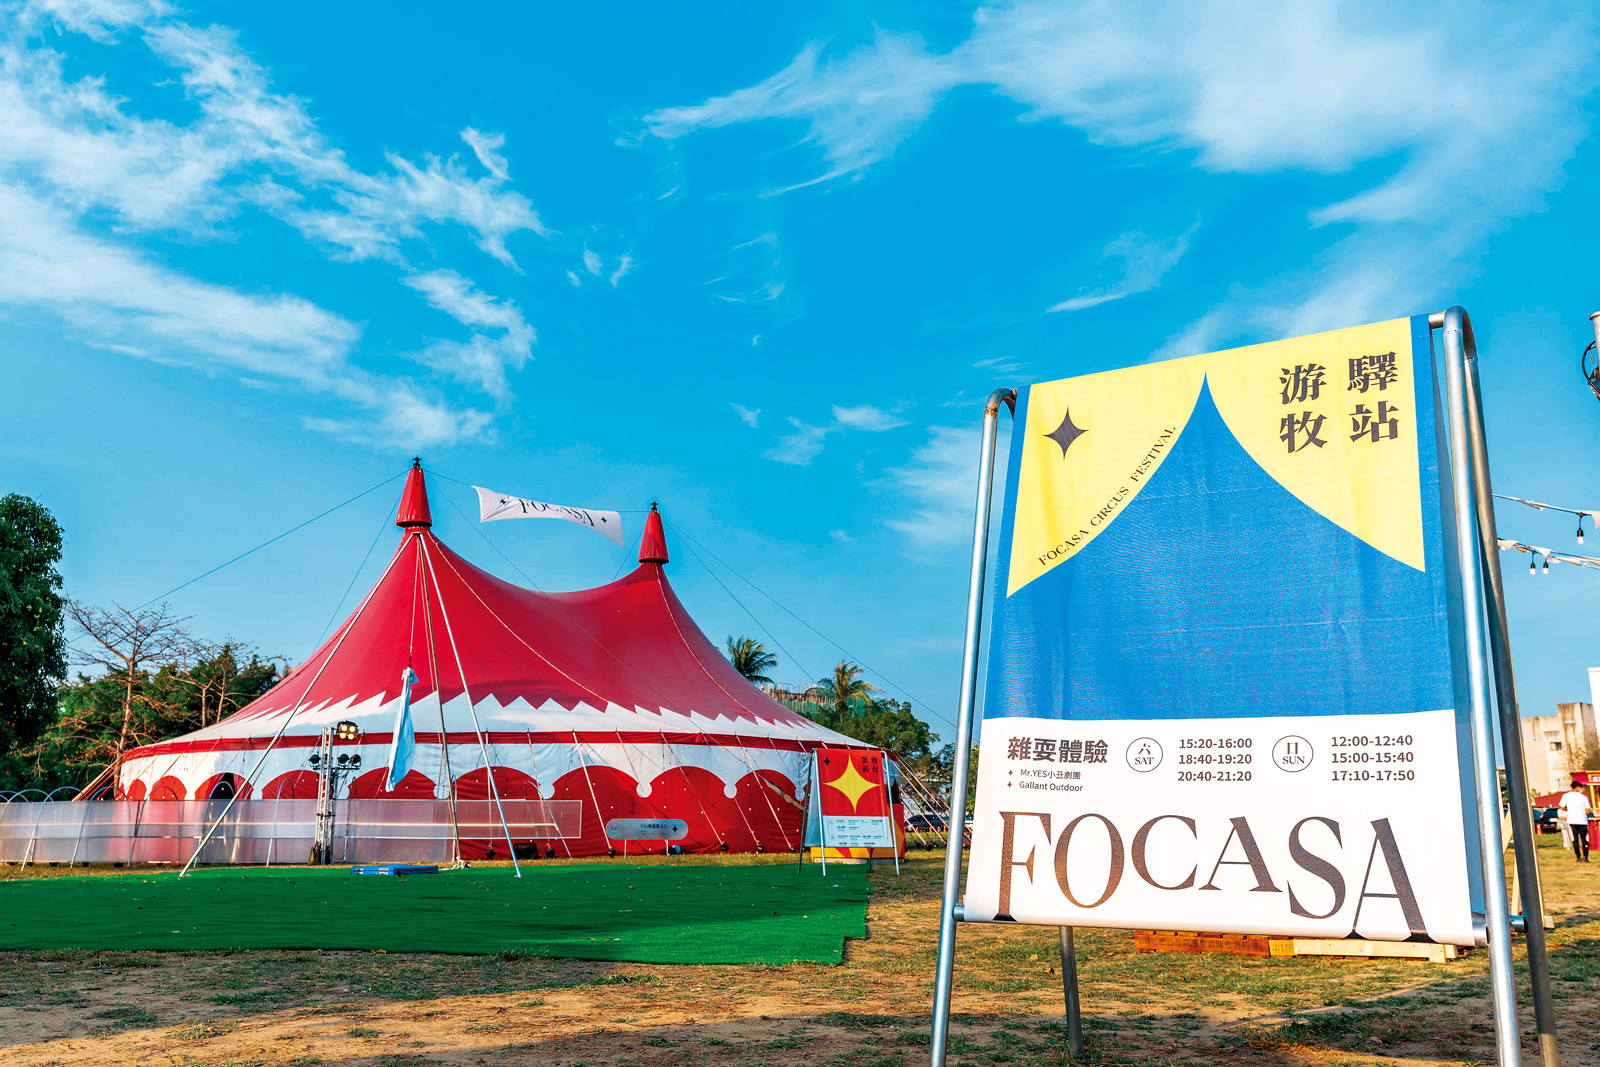 馬戲藝術節上可以看到最招牌的巨型馬戲篷。（圖片來源／FOCASA）